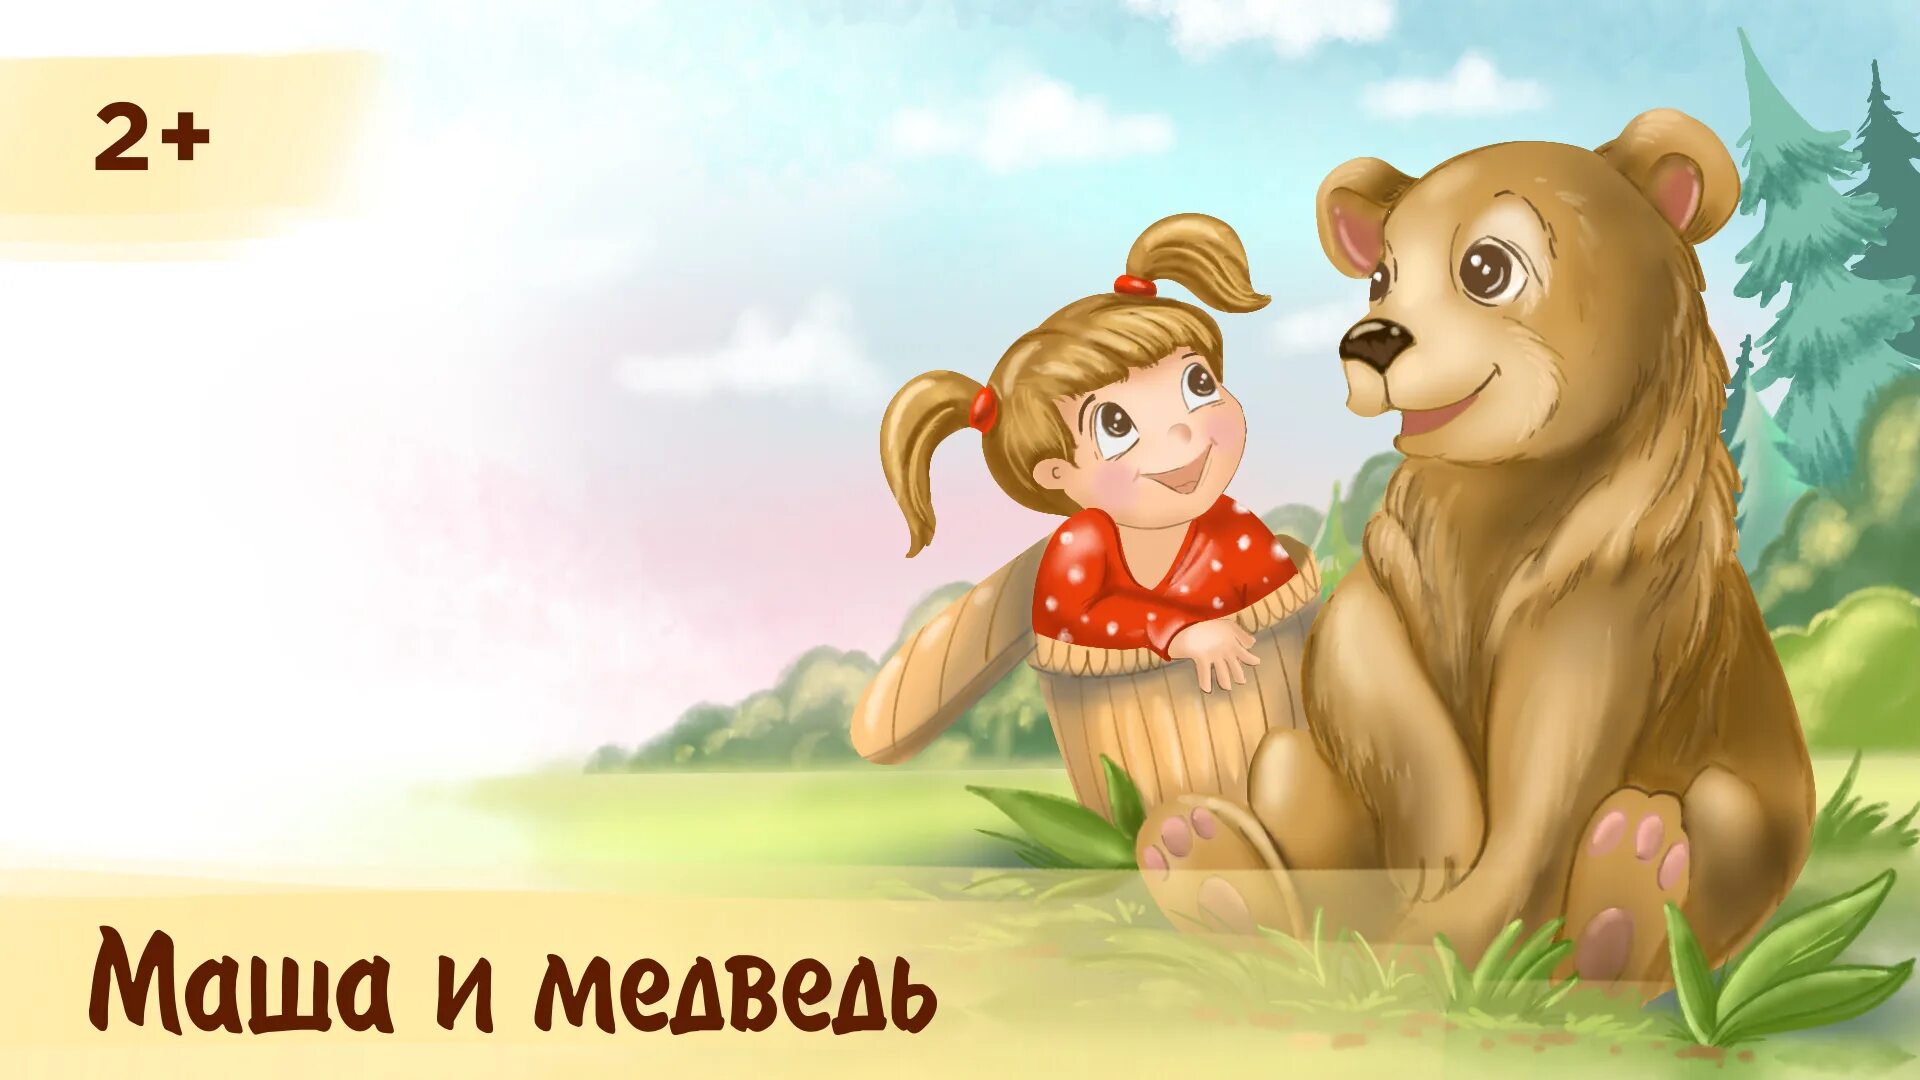 Маша и медведь русская народная сказка слушать. Аудиосказки Маша и медведь. Аудиосказка Маша и медведь. Аудио сказка Маша и медведь. Аудиосказка для детей Маша и медведь.